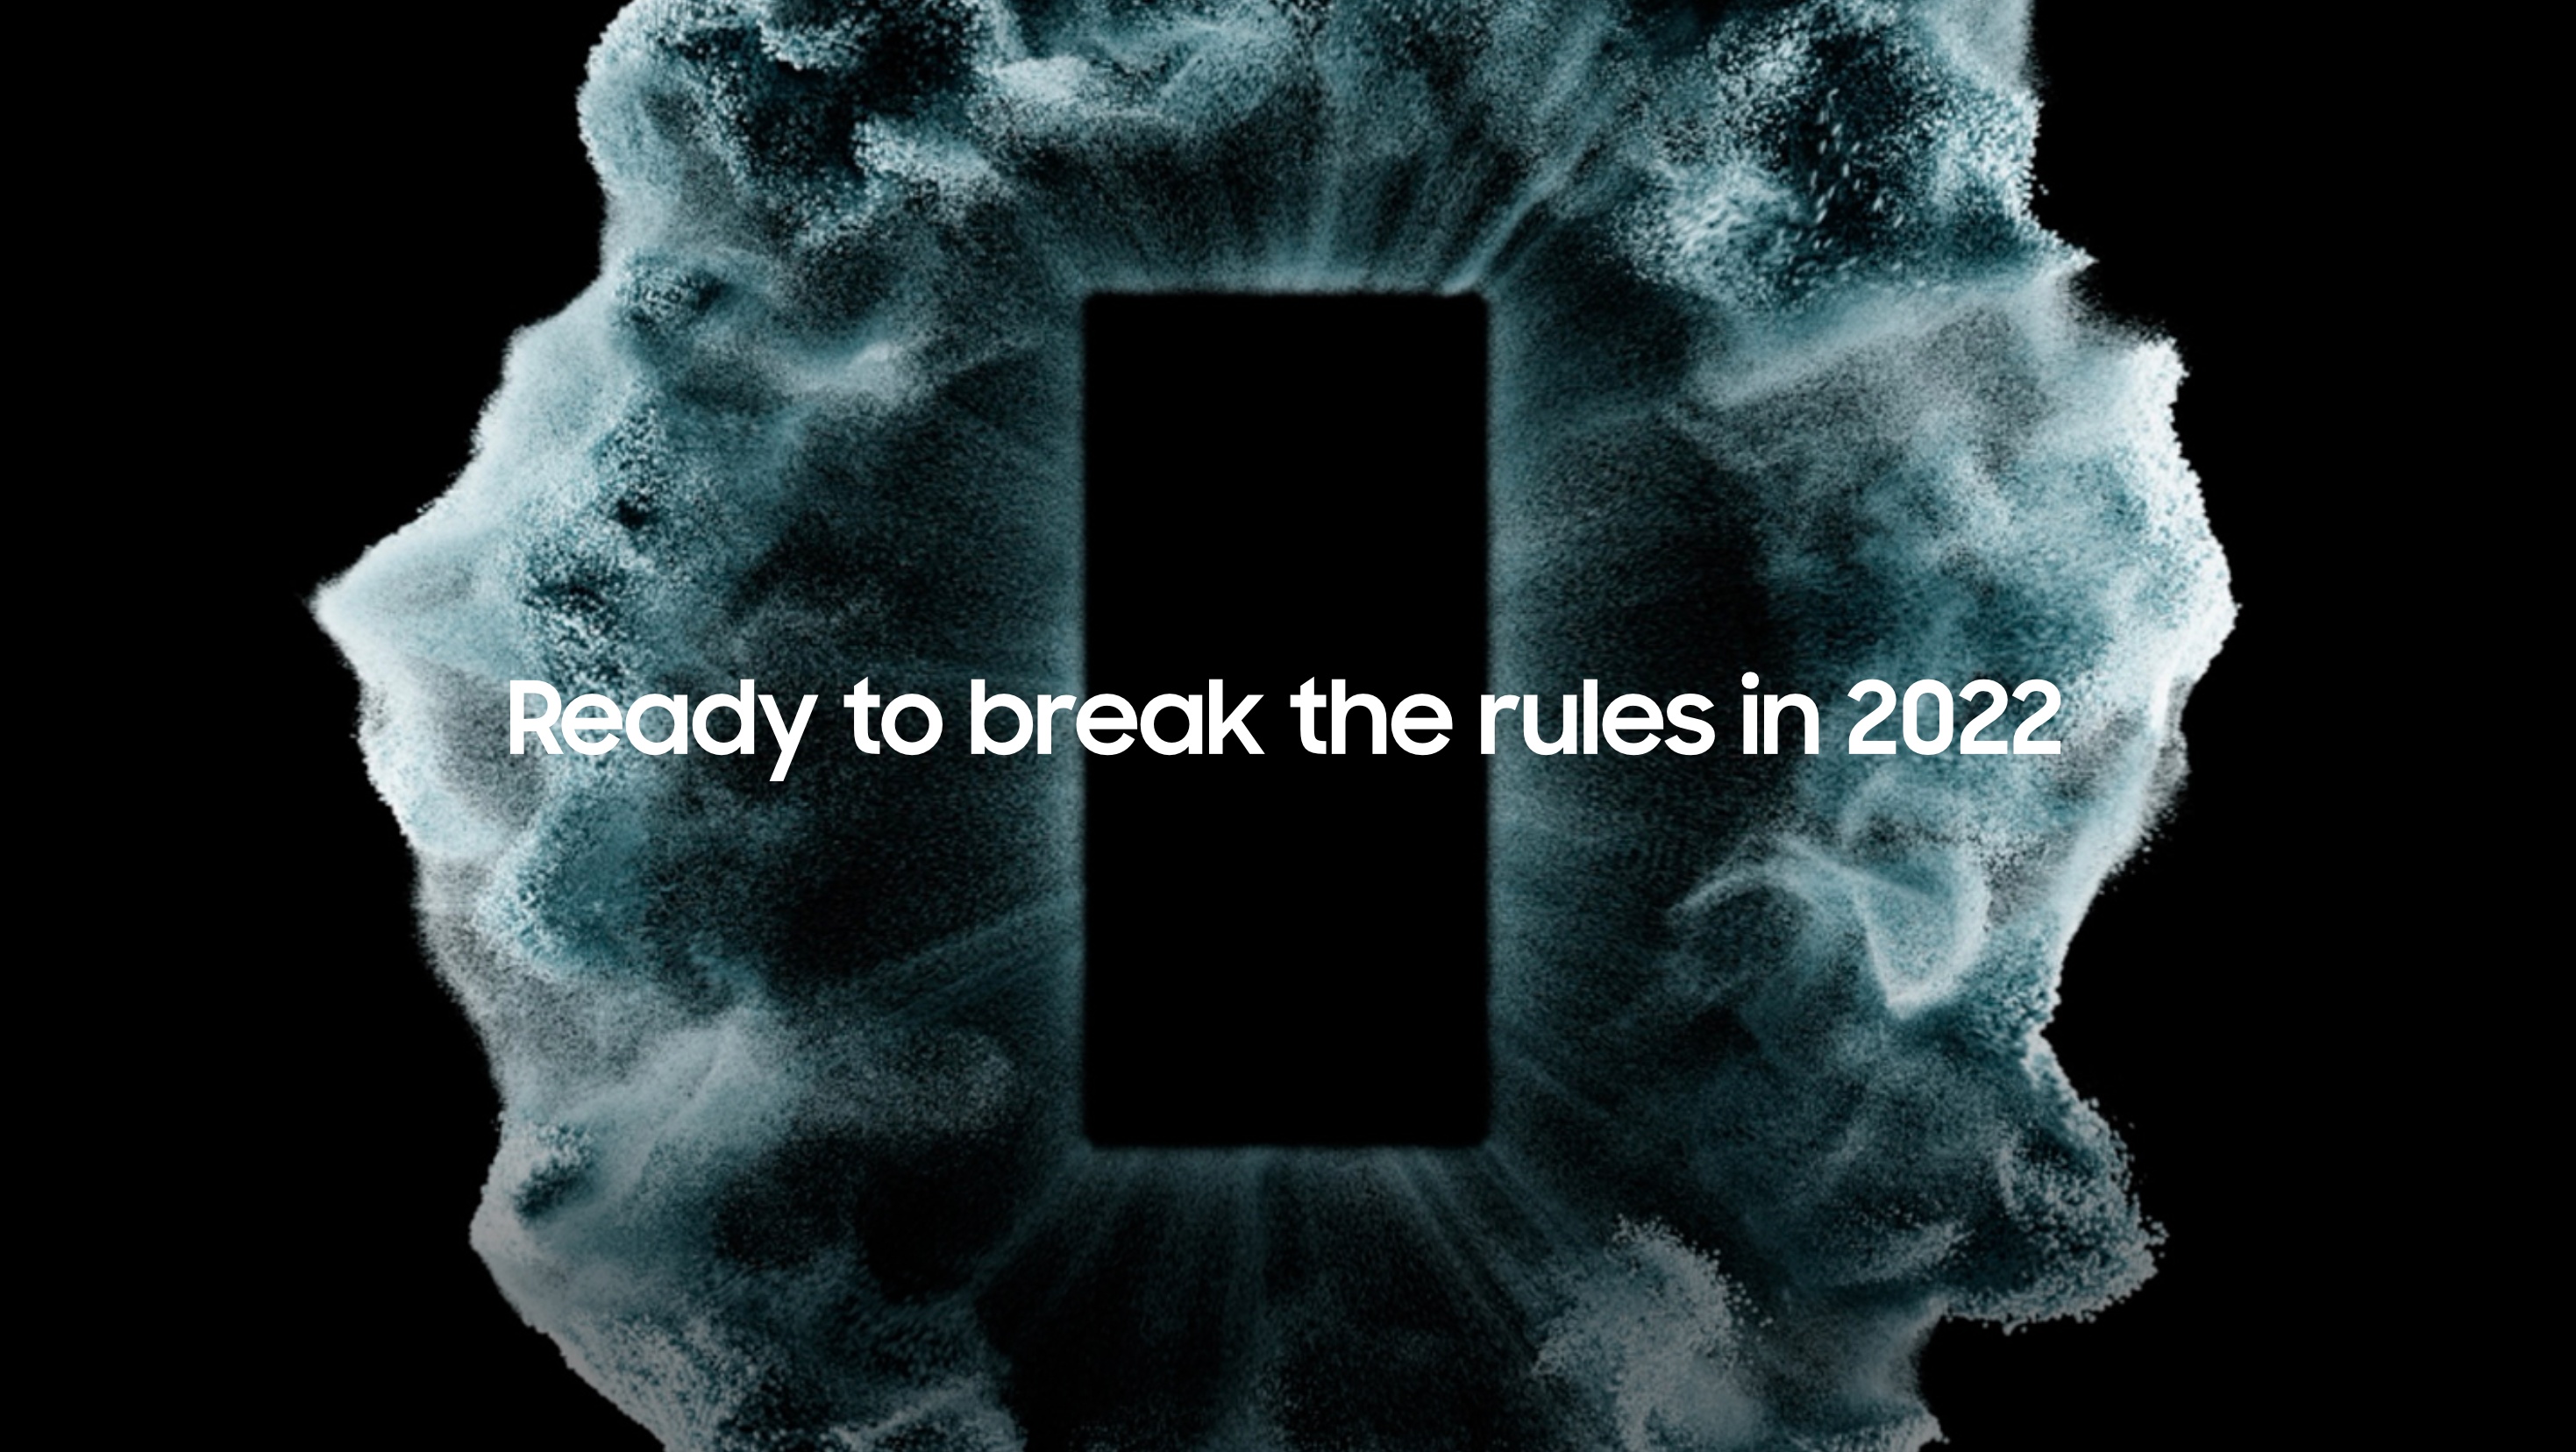 Samsung tung teaser đầu tiên về sự kiện Galaxy UNPACKED 2022 sẽ được tổ chức trong tháng 2 năm nay